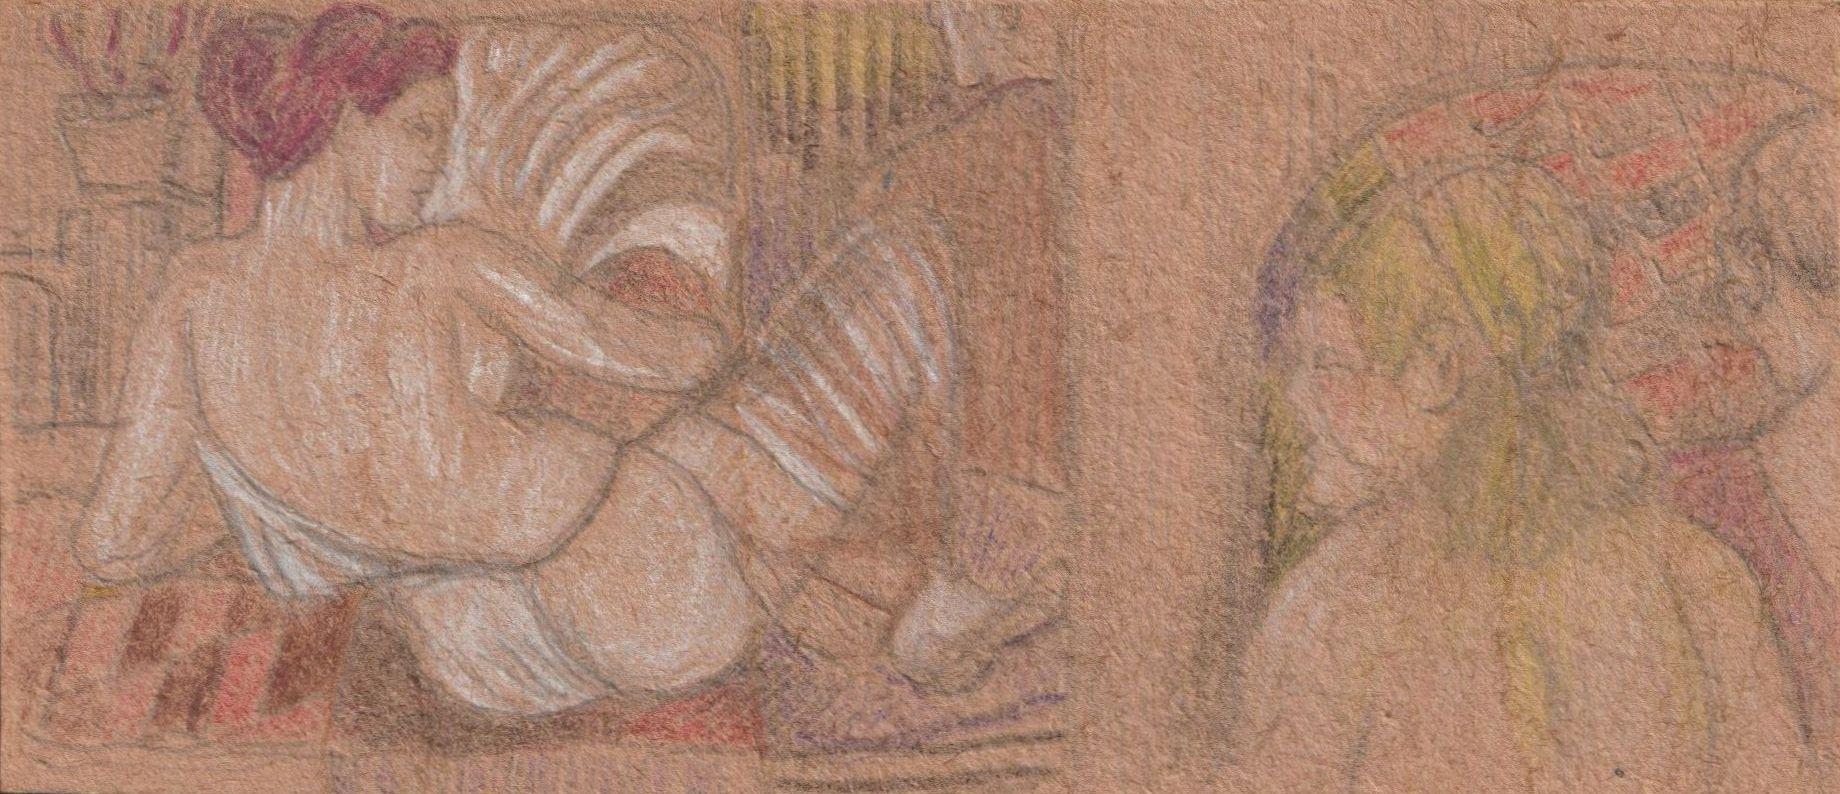 La Vénus d'Esther Golosh  1958, carton, techniques mixtes, 6,8 x5,6 cm